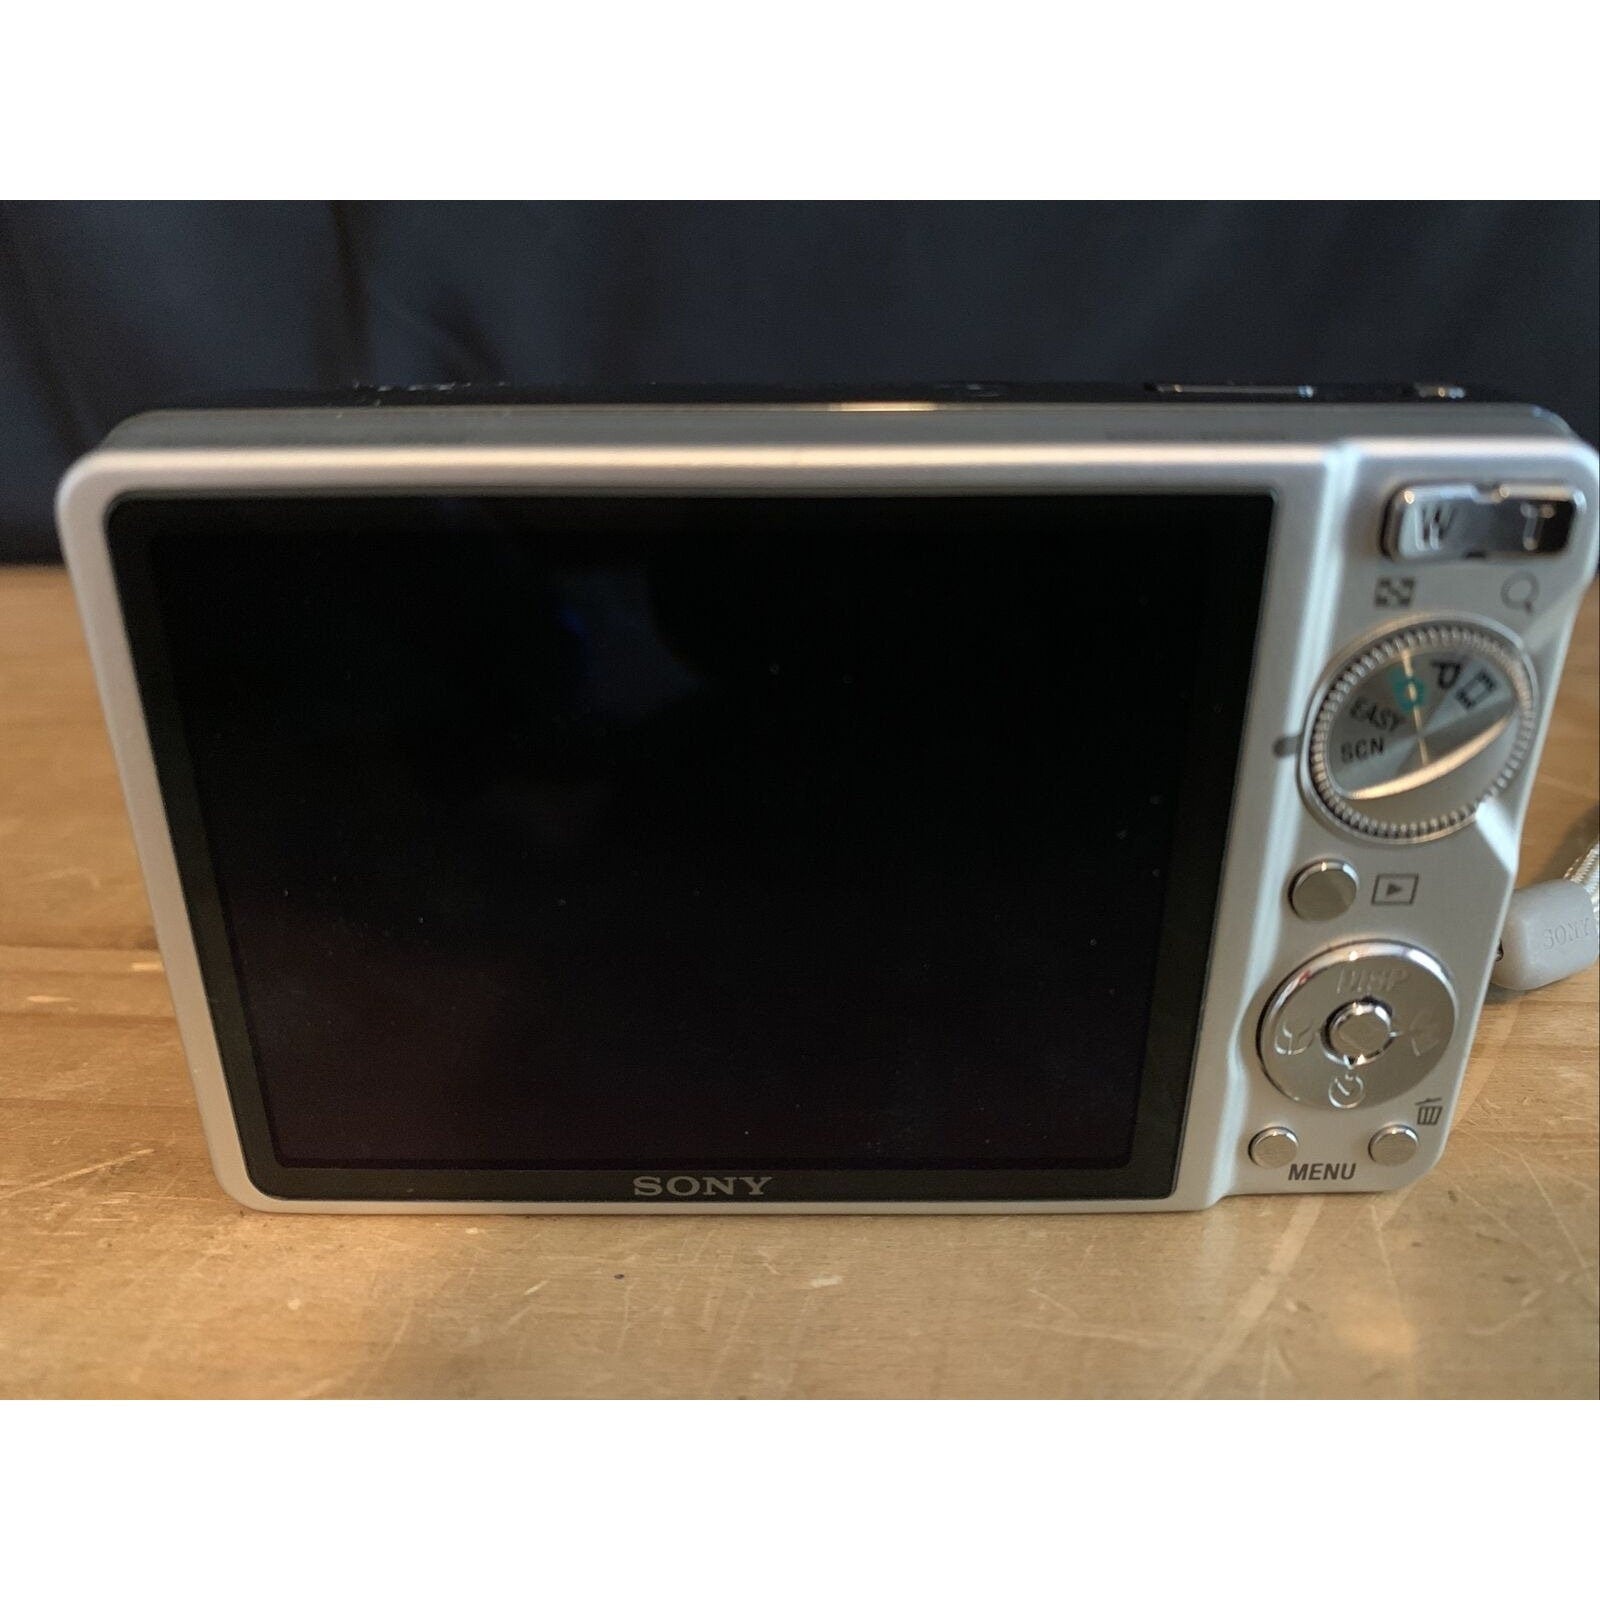 Sony Cyber-shot DSC-W290 12.1MP Digital Camera - Silver